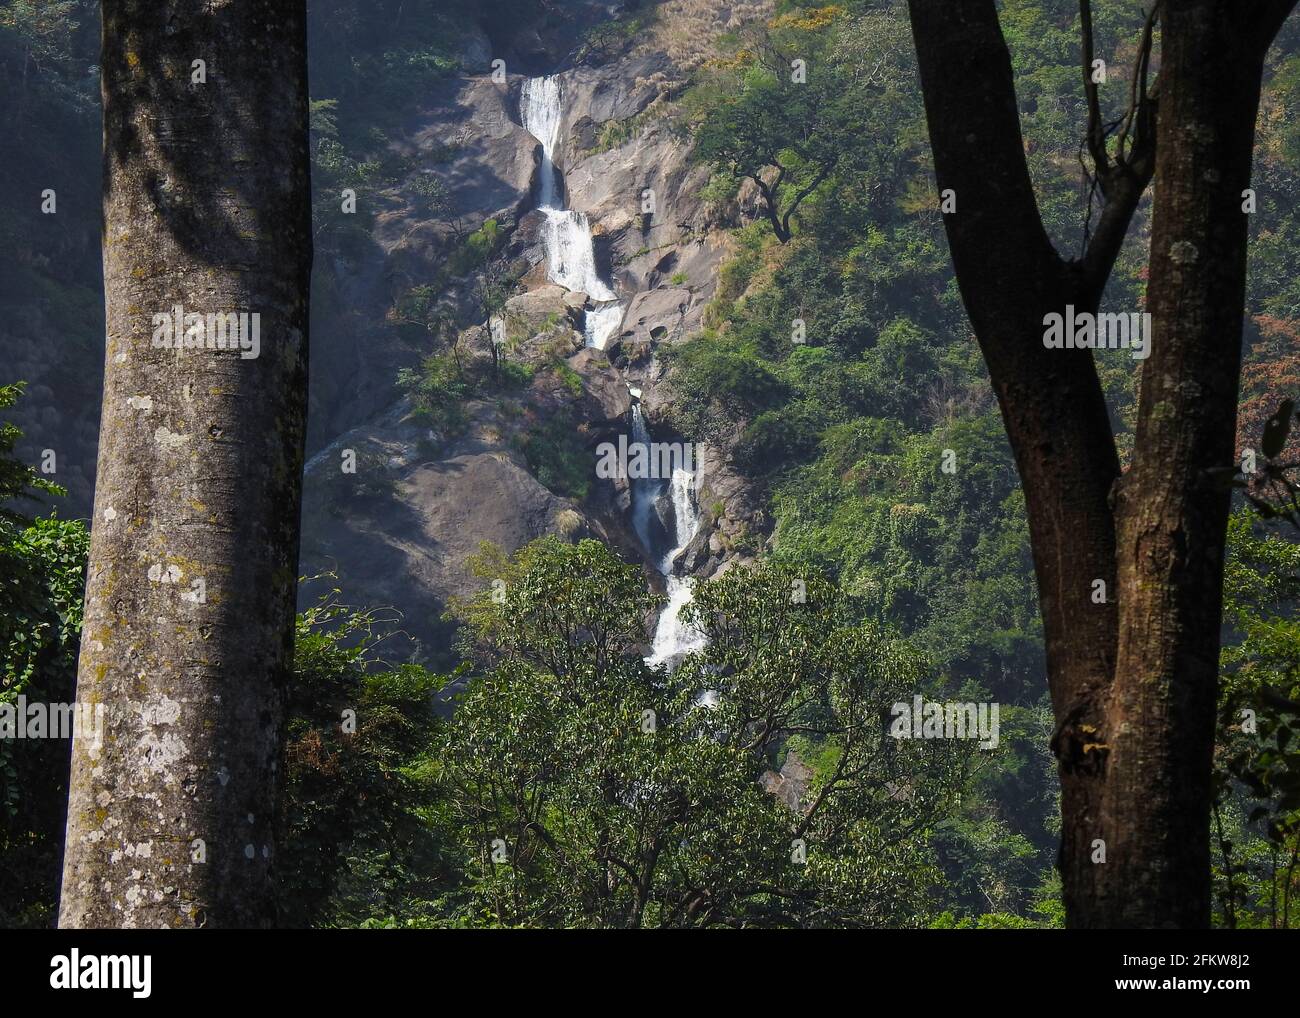 Siruvani waterfalls Stock Photo